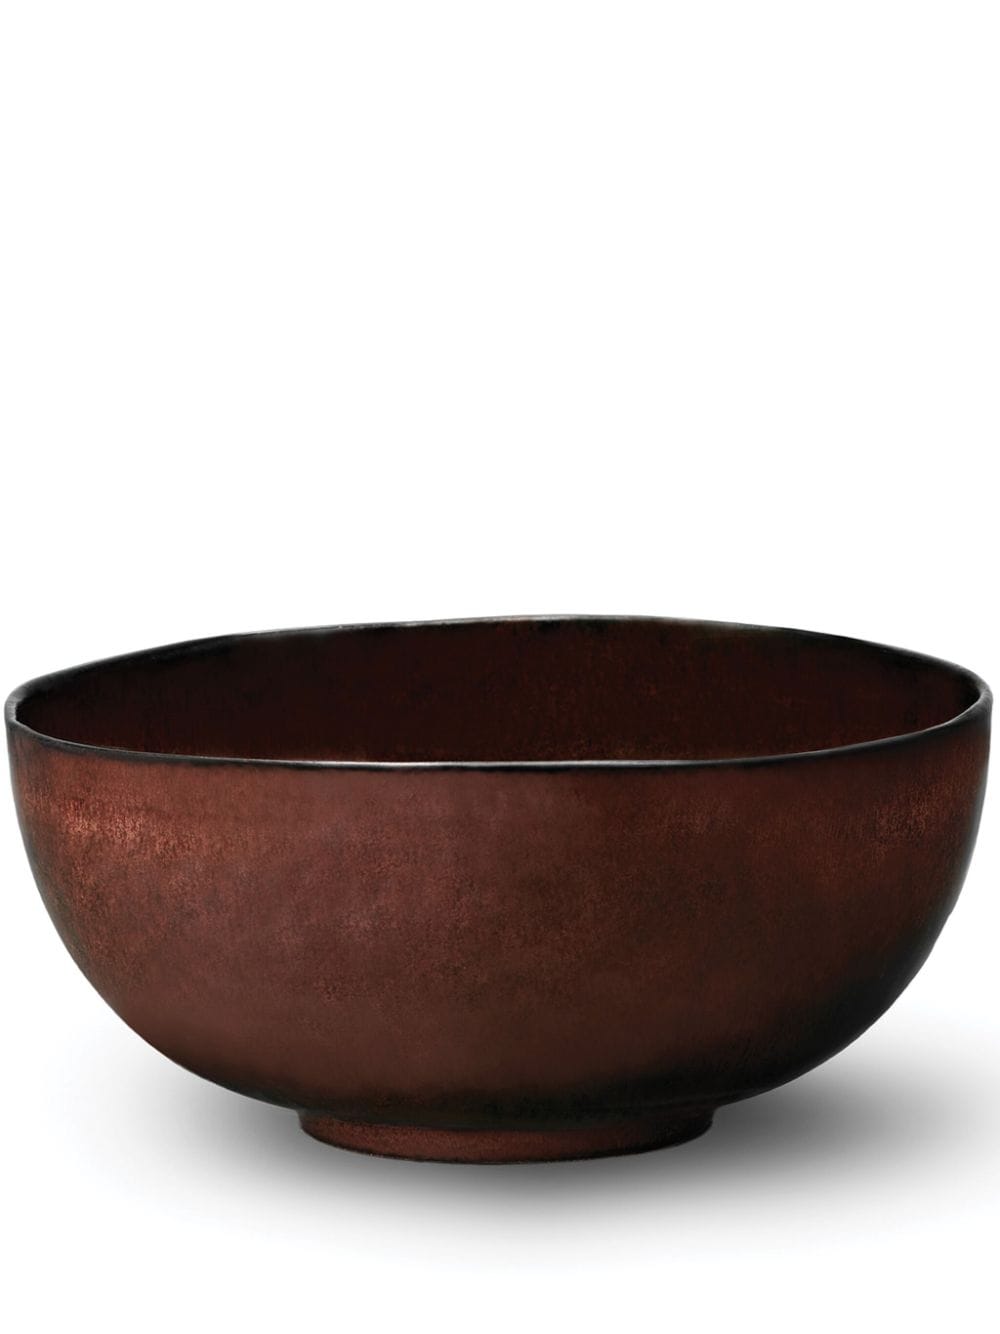 L'Objet Terra porcelain salad bowl (20cm) - Red von L'Objet